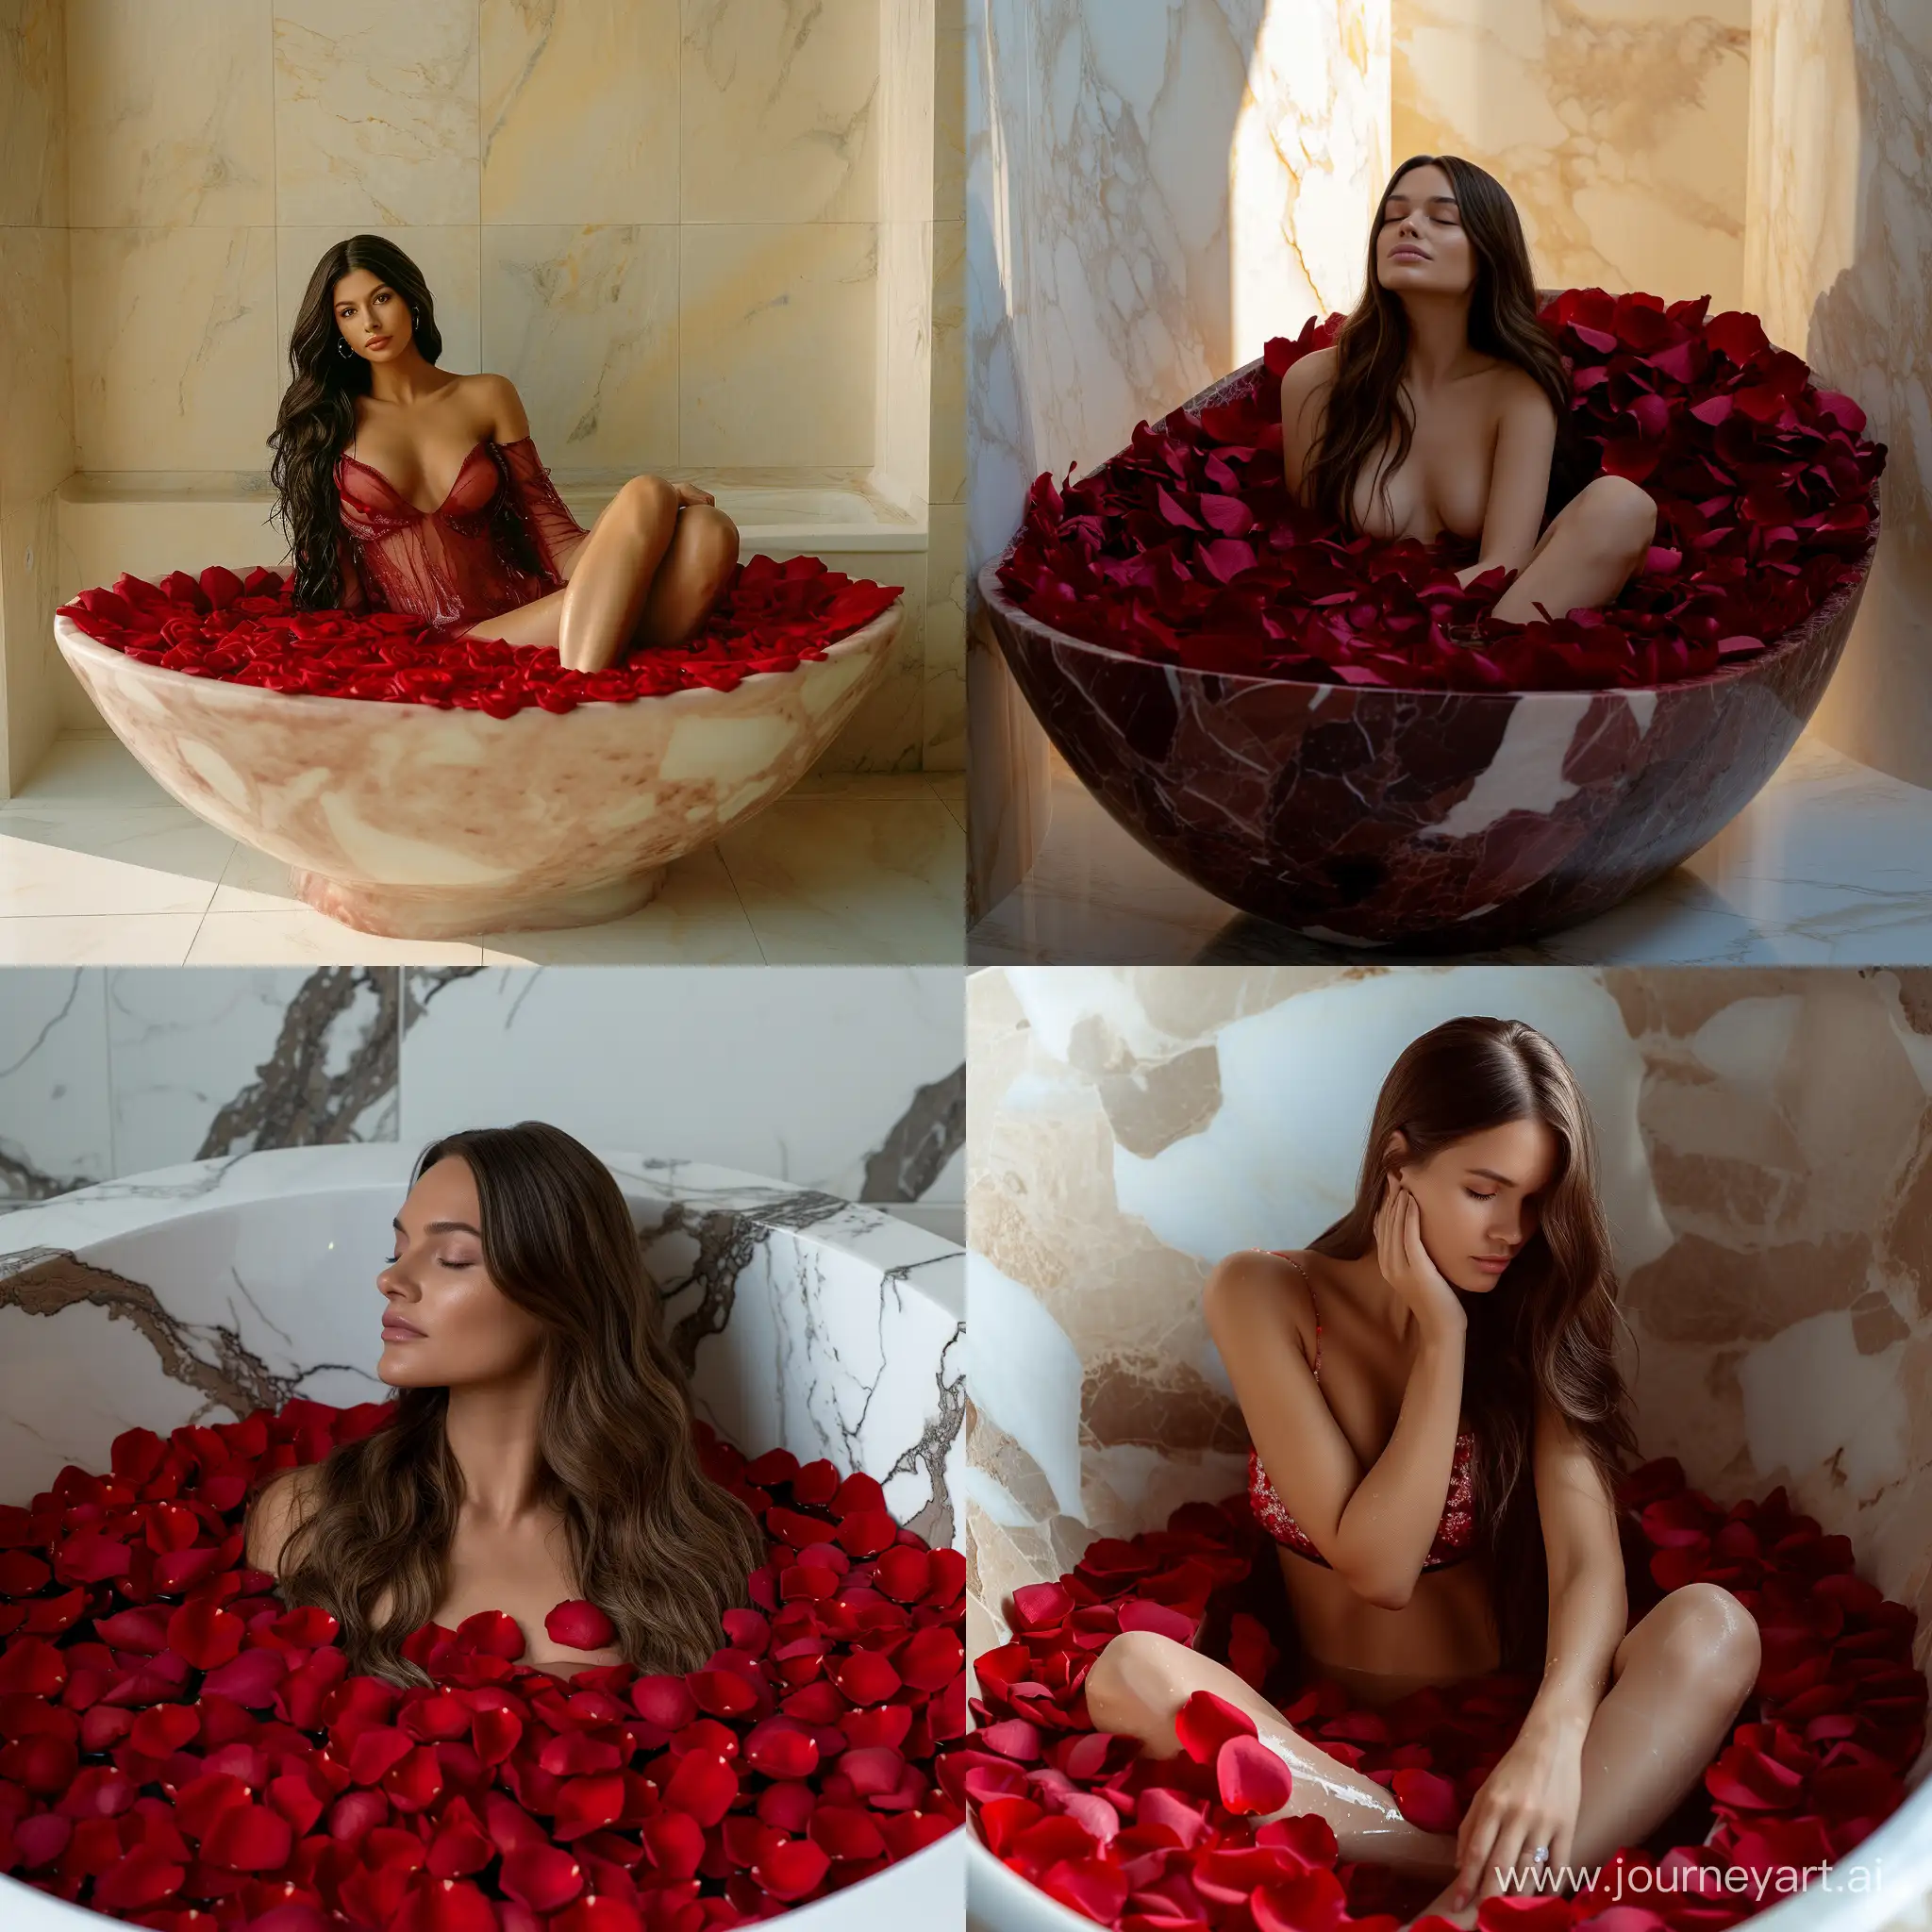 Brunette-Model-in-Red-Rose-Petal-Bath-Tub-Luxurious-4K-UHD-Pinterest-Aesthetic